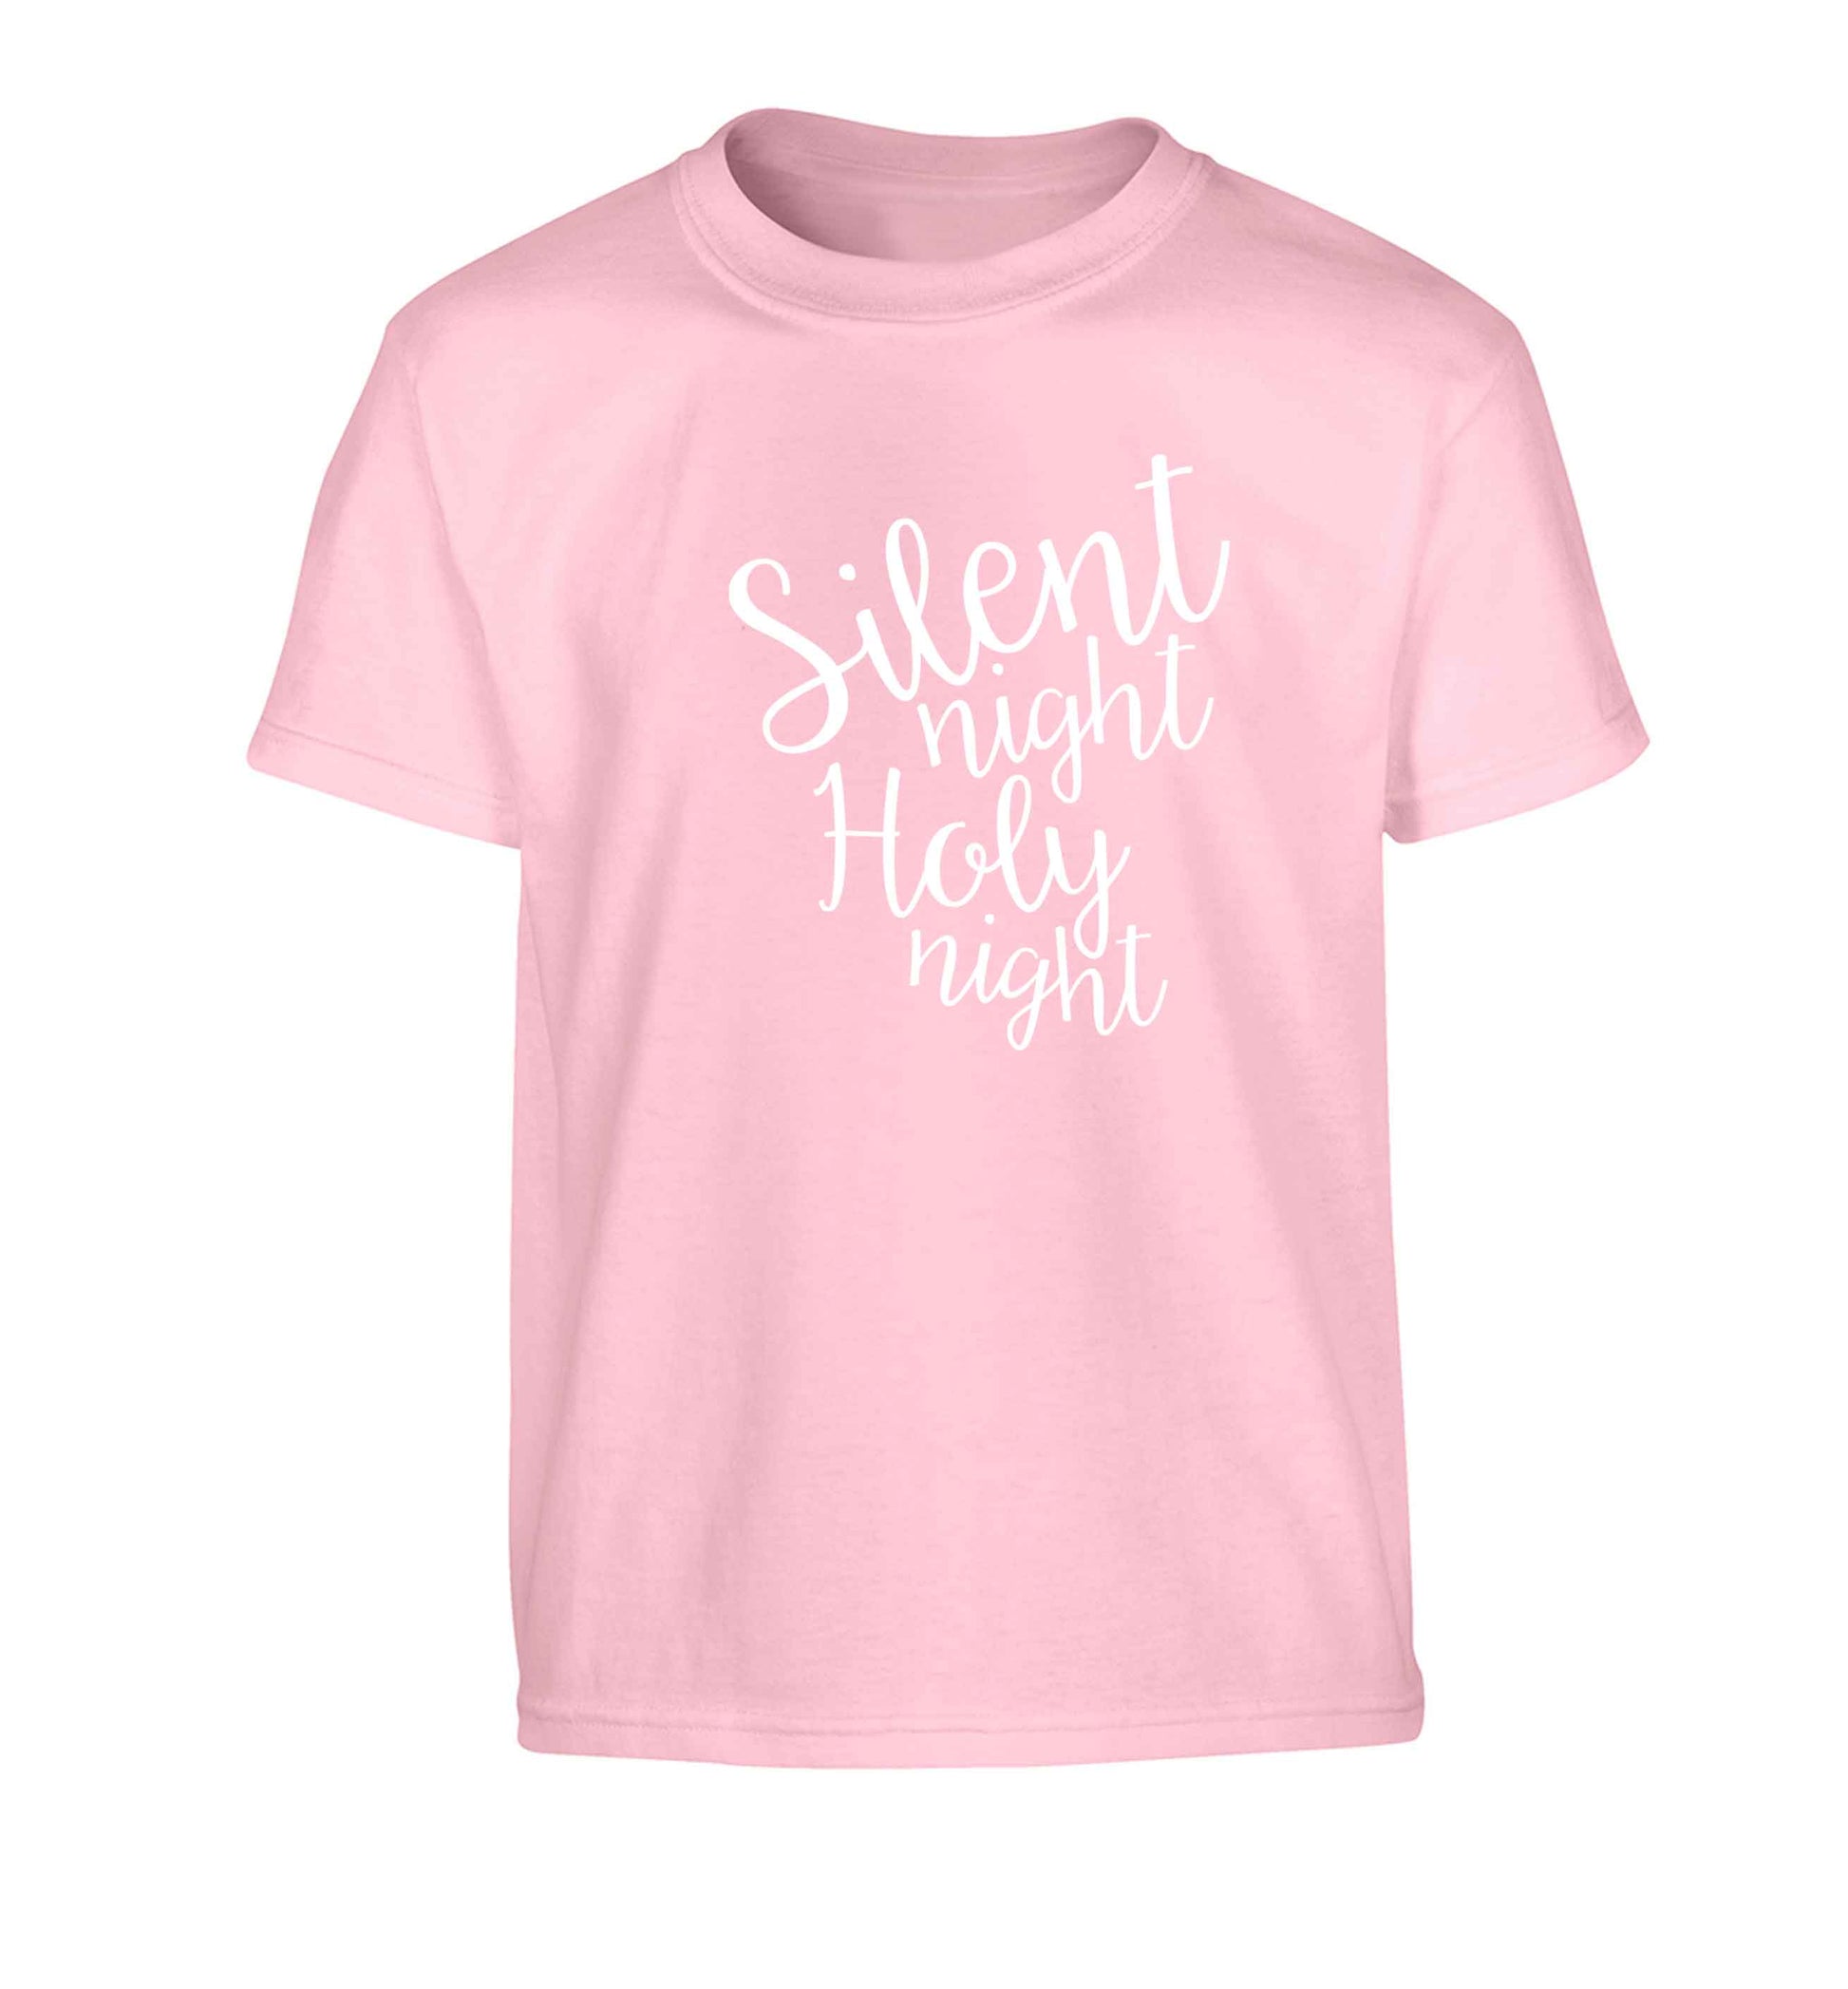 Silent night holy night Children's light pink Tshirt 12-13 Years